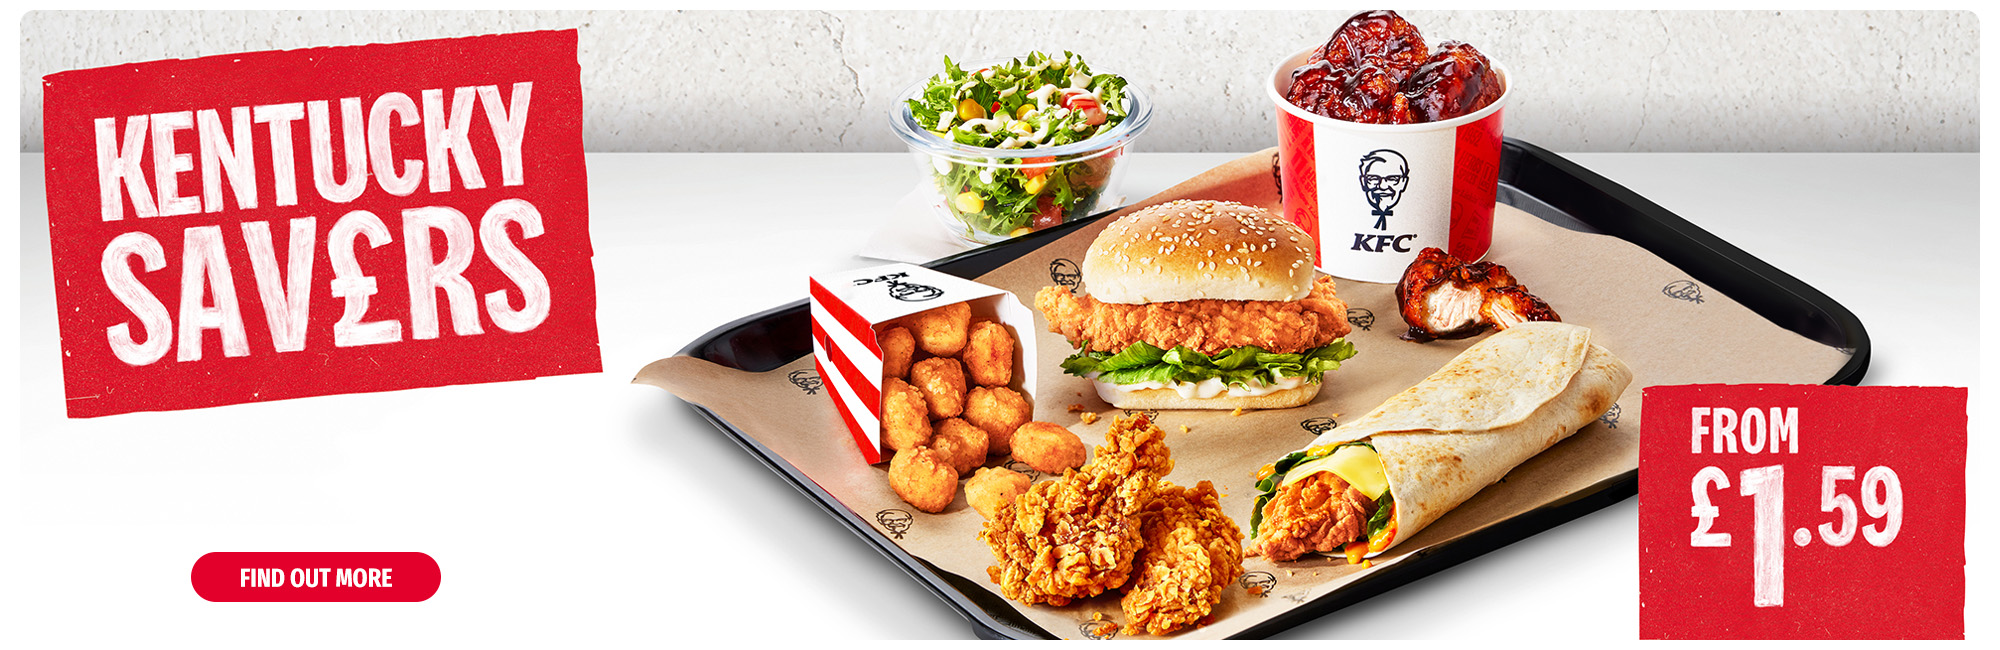 KFC - Kentucky Savers combo deals